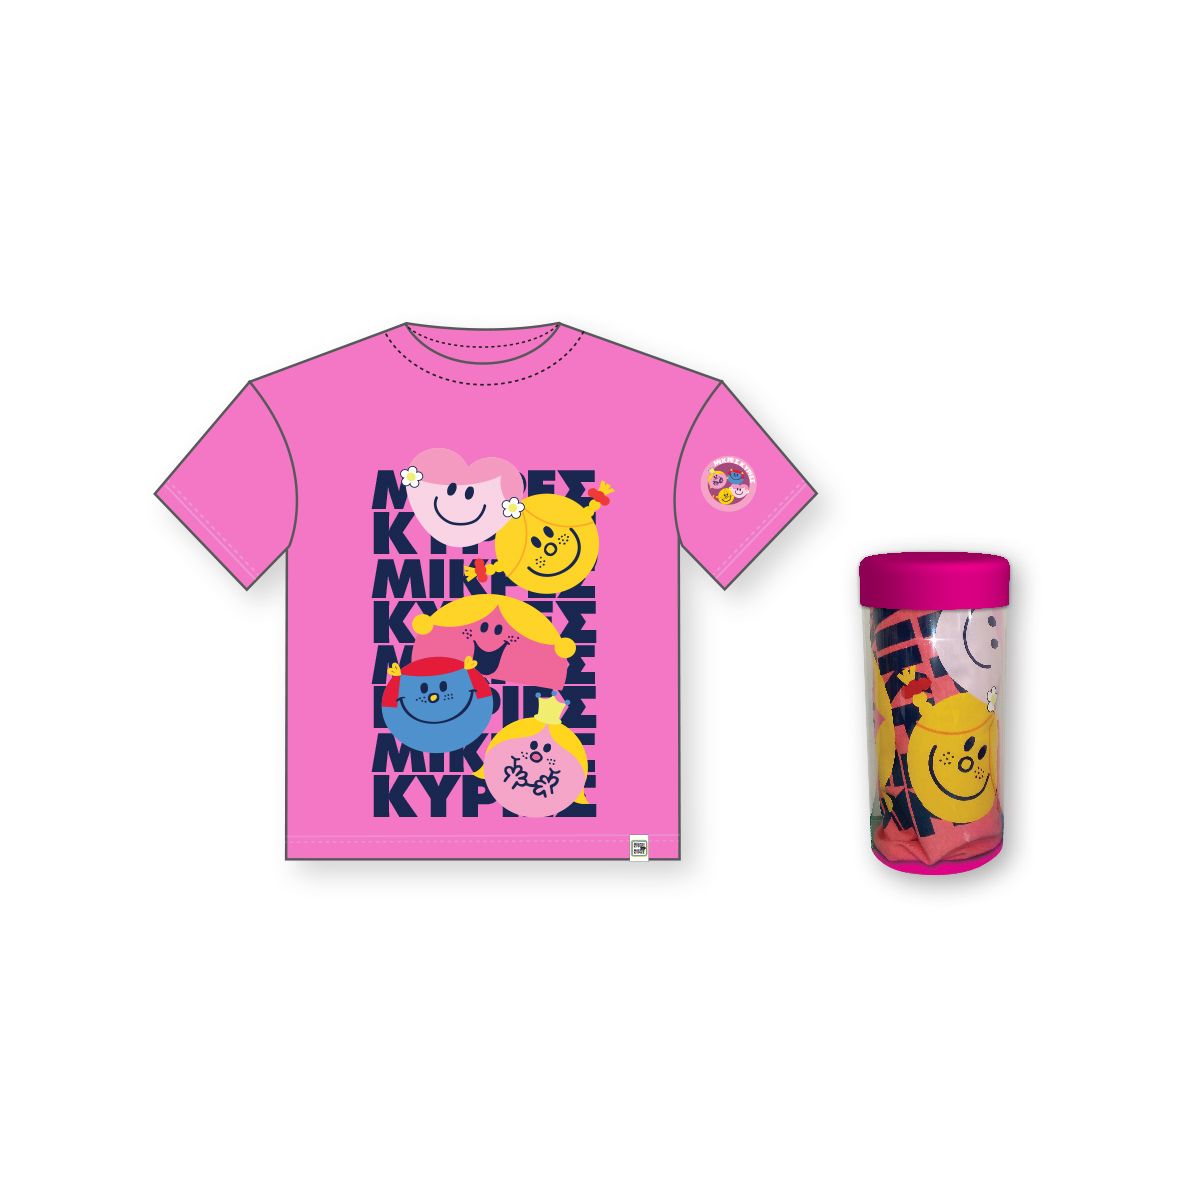 Μικρές Κυρίες - T-Shirt Παιδικό Μπλουζάκι | Συλλογή Μικροί Κύριοι - Μικρές Κυρίες | Χάρτινη Πολη  Ηλικία 5-6 HP.TST.0006